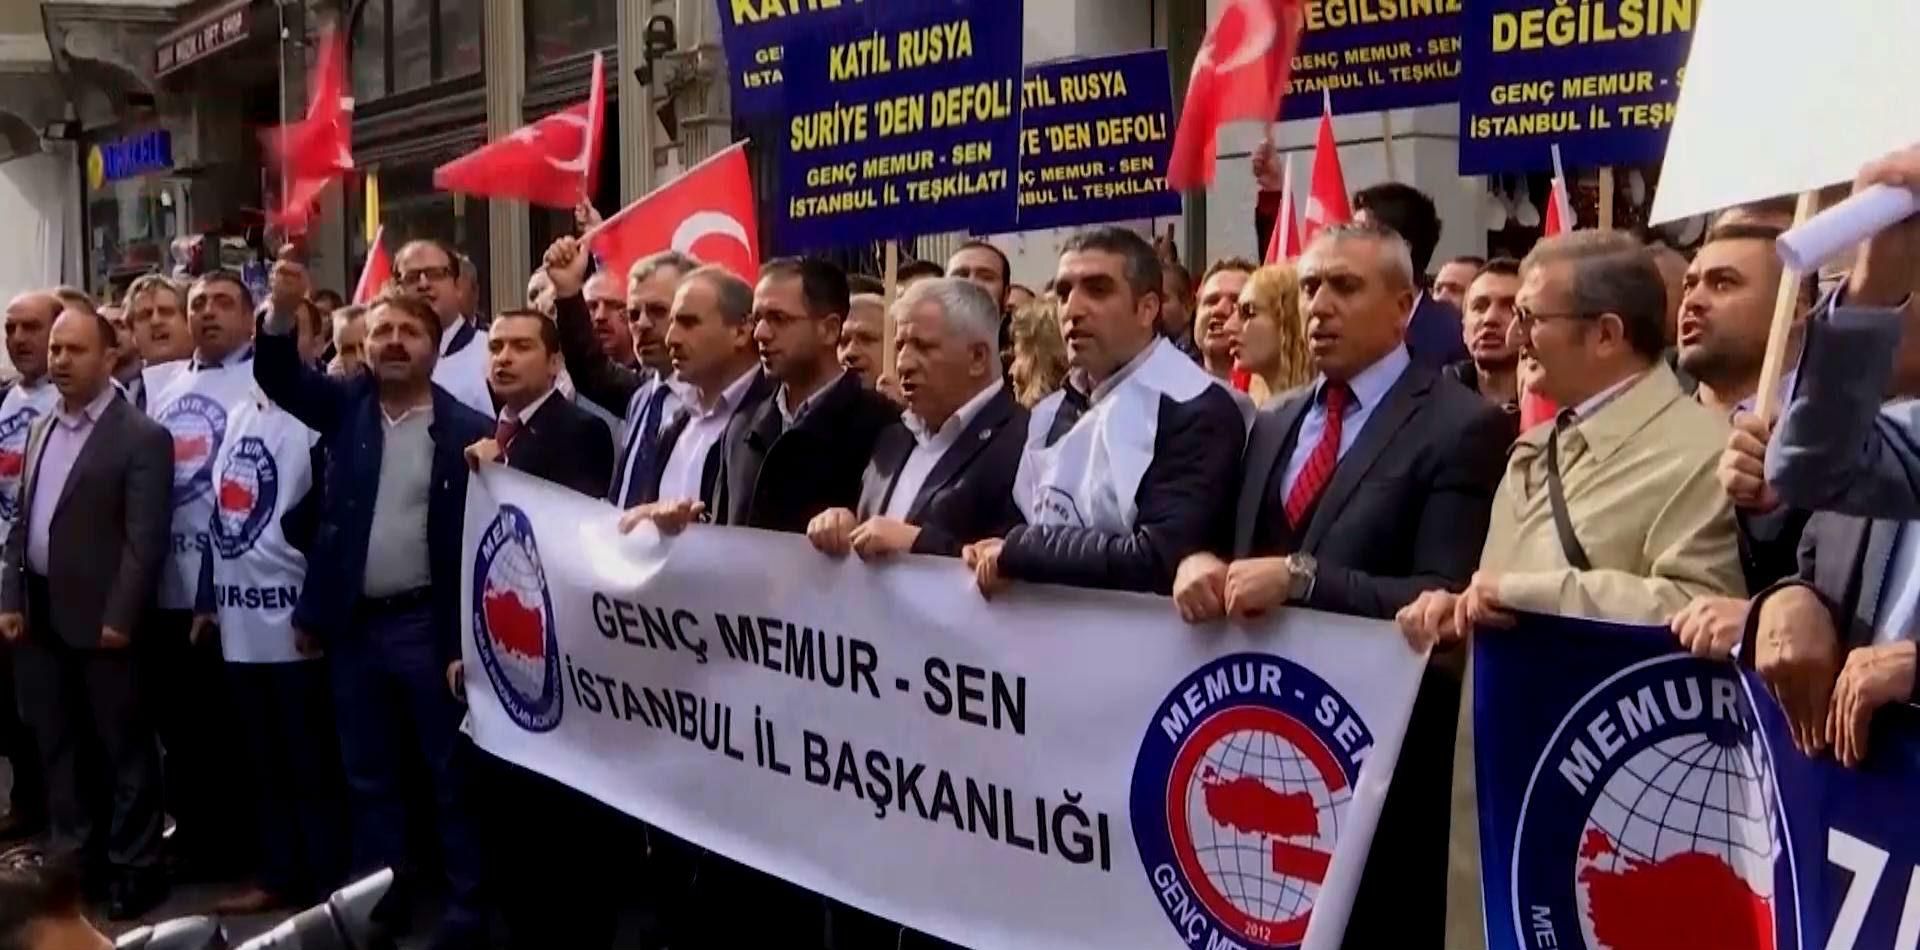 Турки вийшли на протест проти Росії